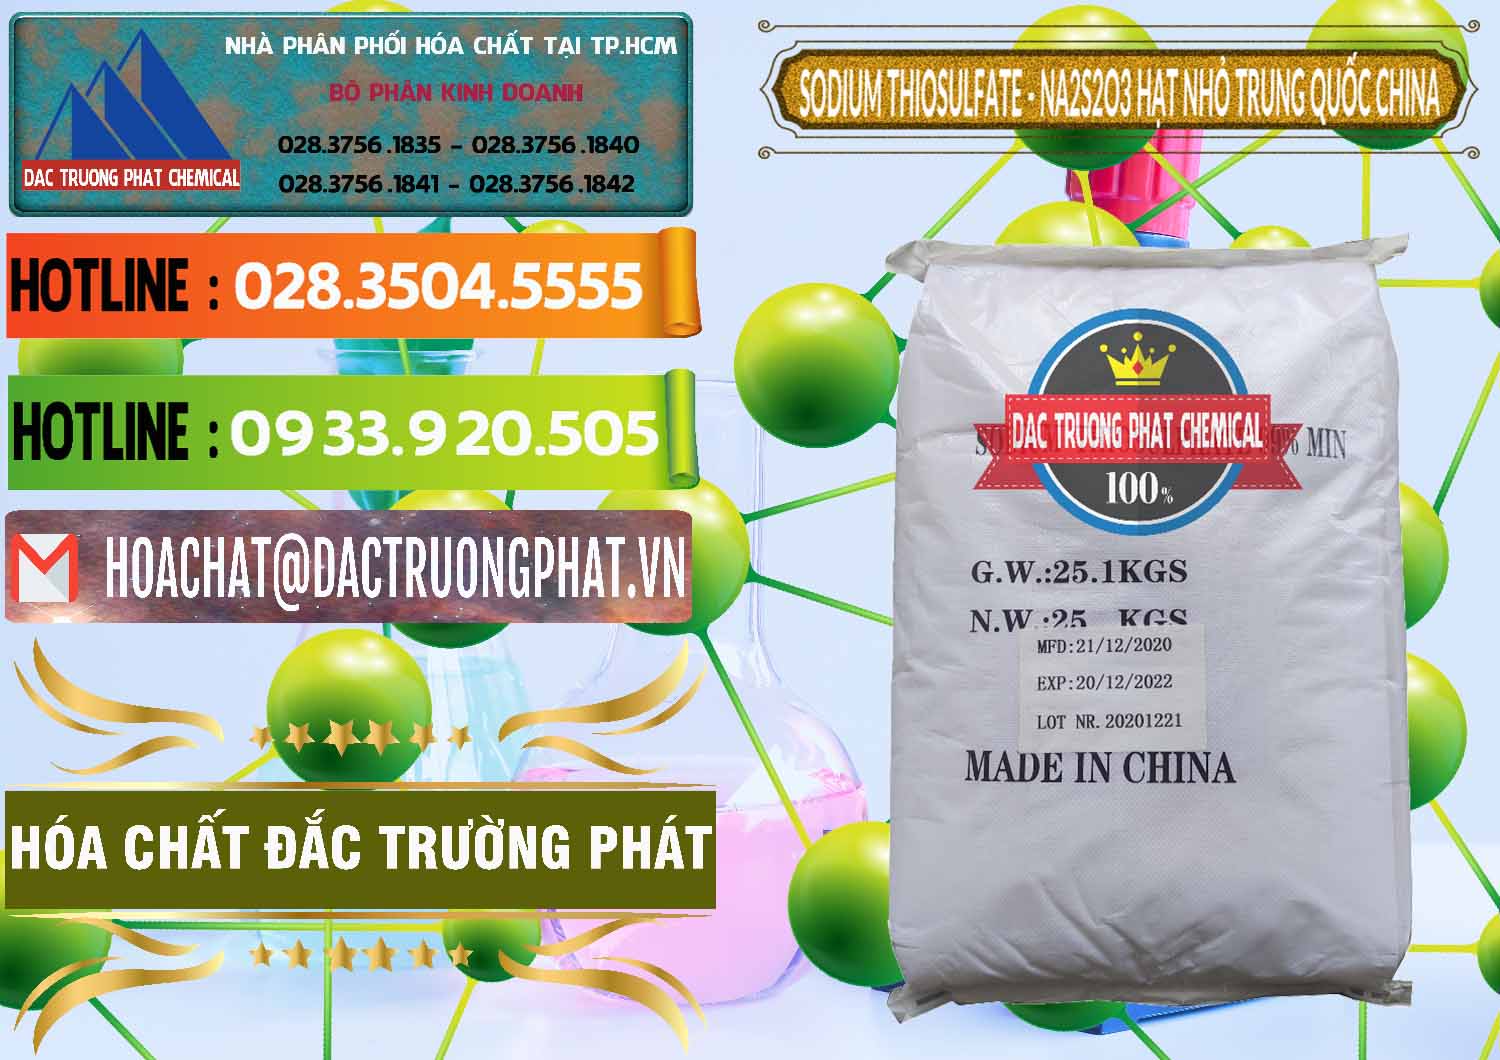 Chuyên phân phối và bán Sodium Thiosulfate - NA2S2O3 Hạt Nhỏ Trung Quốc China - 0204 - Nơi chuyên nhập khẩu và phân phối hóa chất tại TP.HCM - cungcaphoachat.com.vn